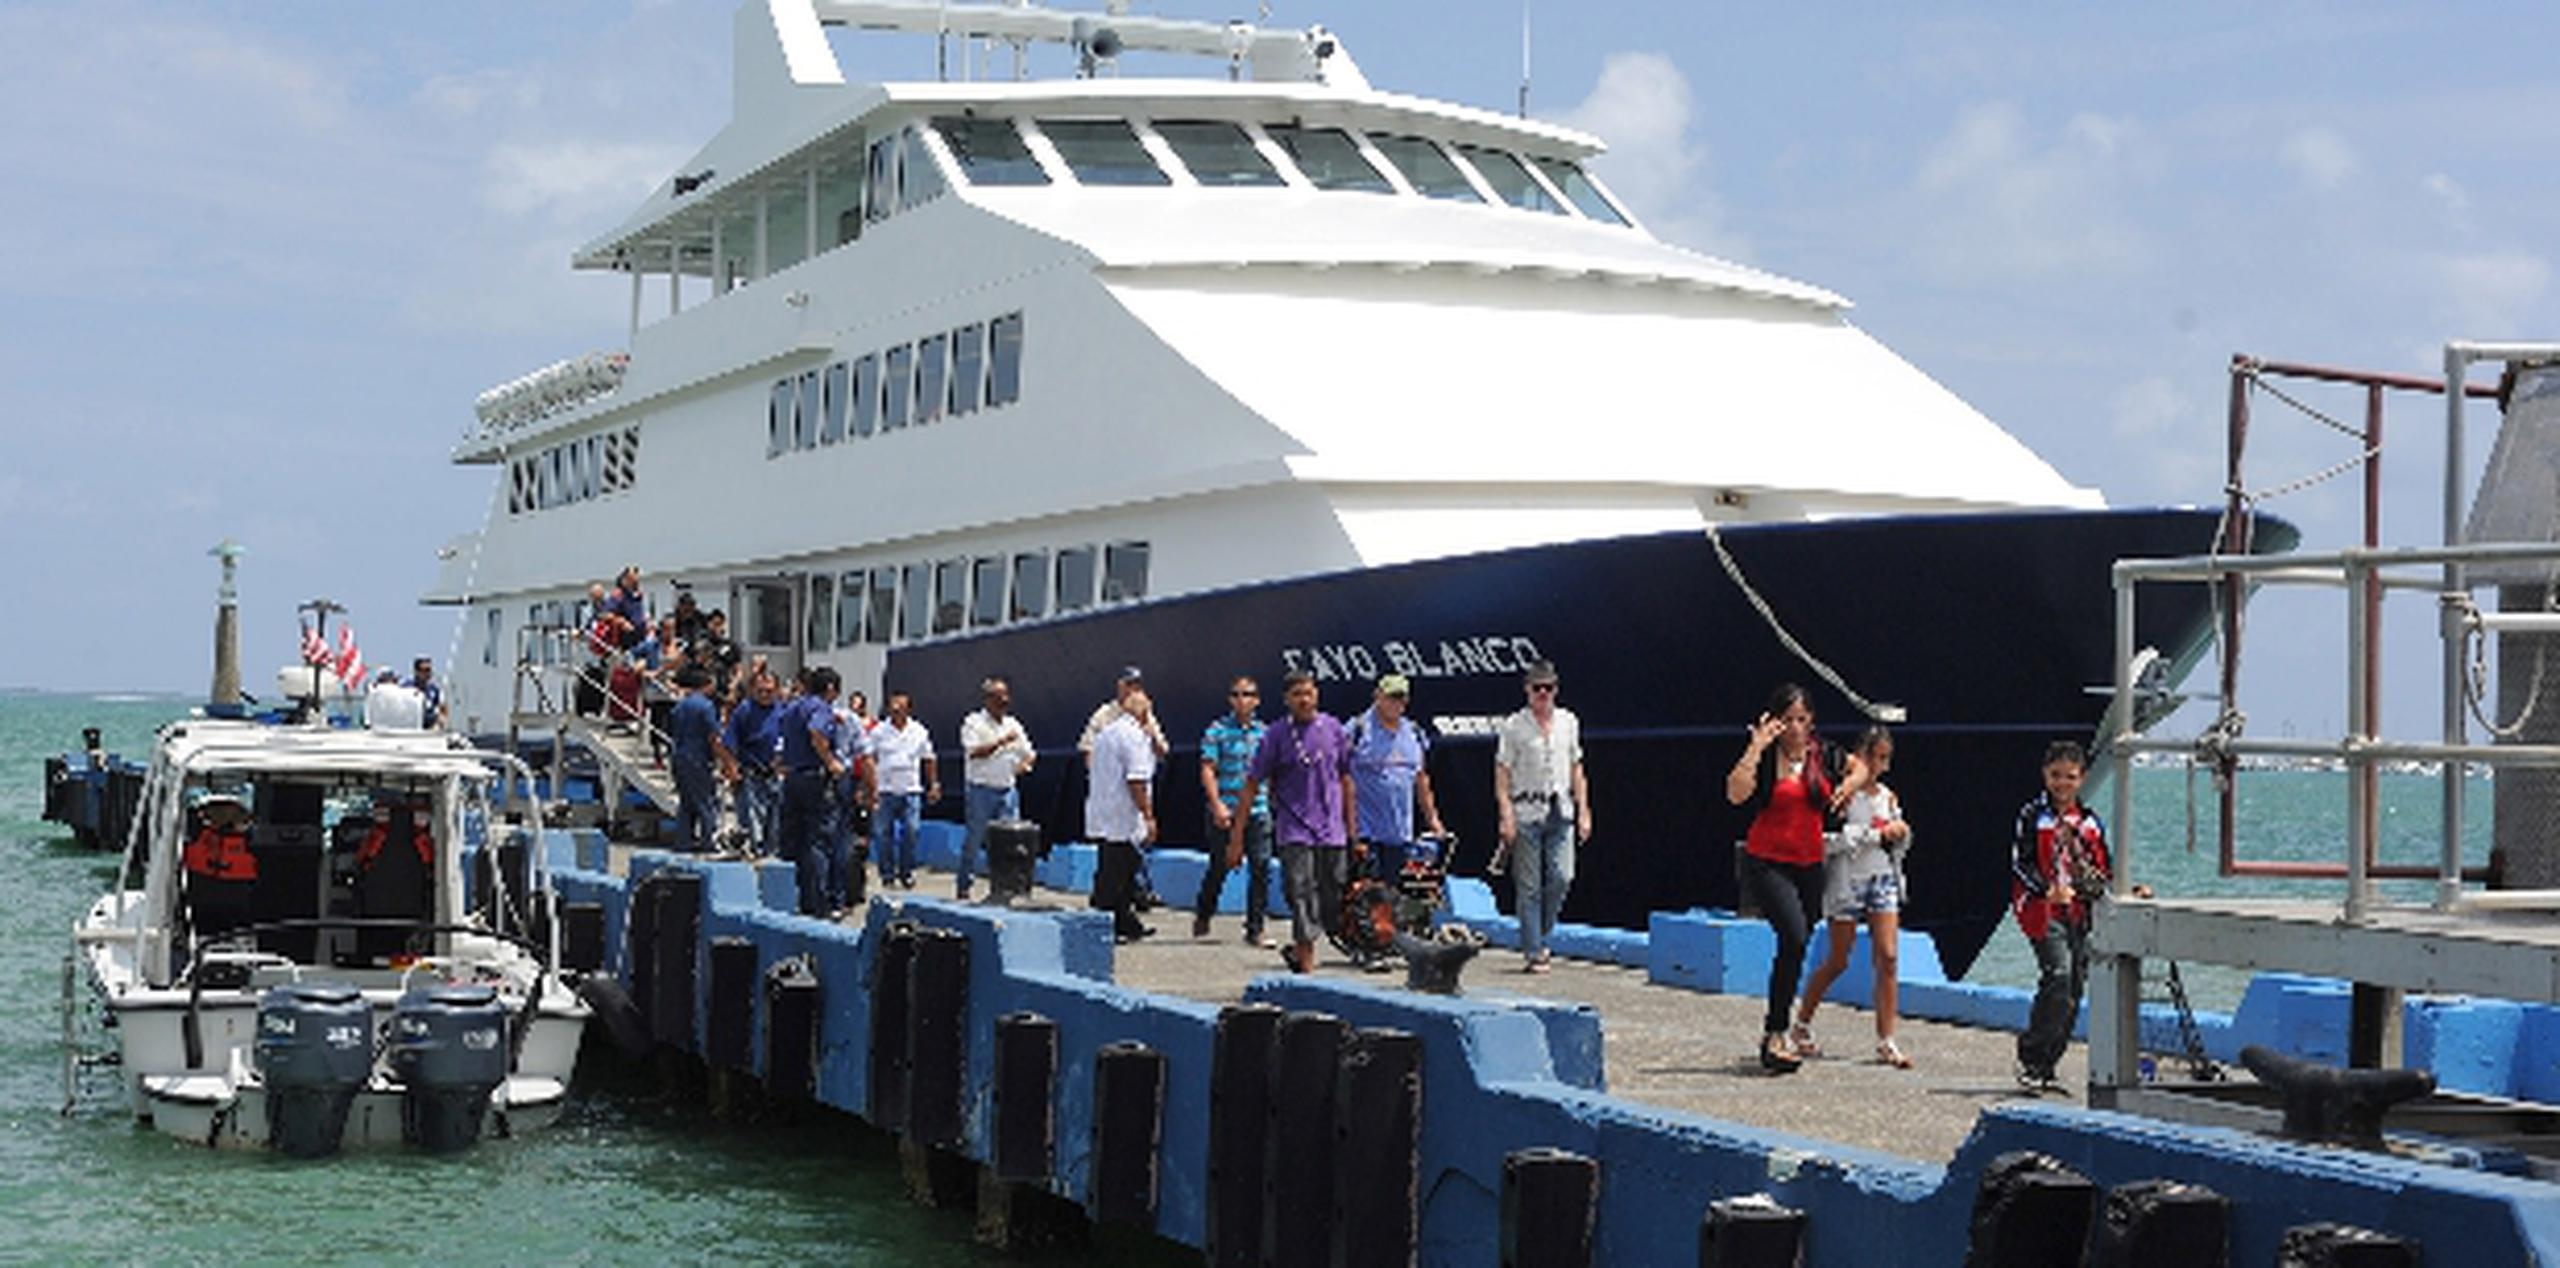 Planifican habilitar más lanchas para aumentar los viajes entre las islas municipio y Puerto Rico. (Archivo)